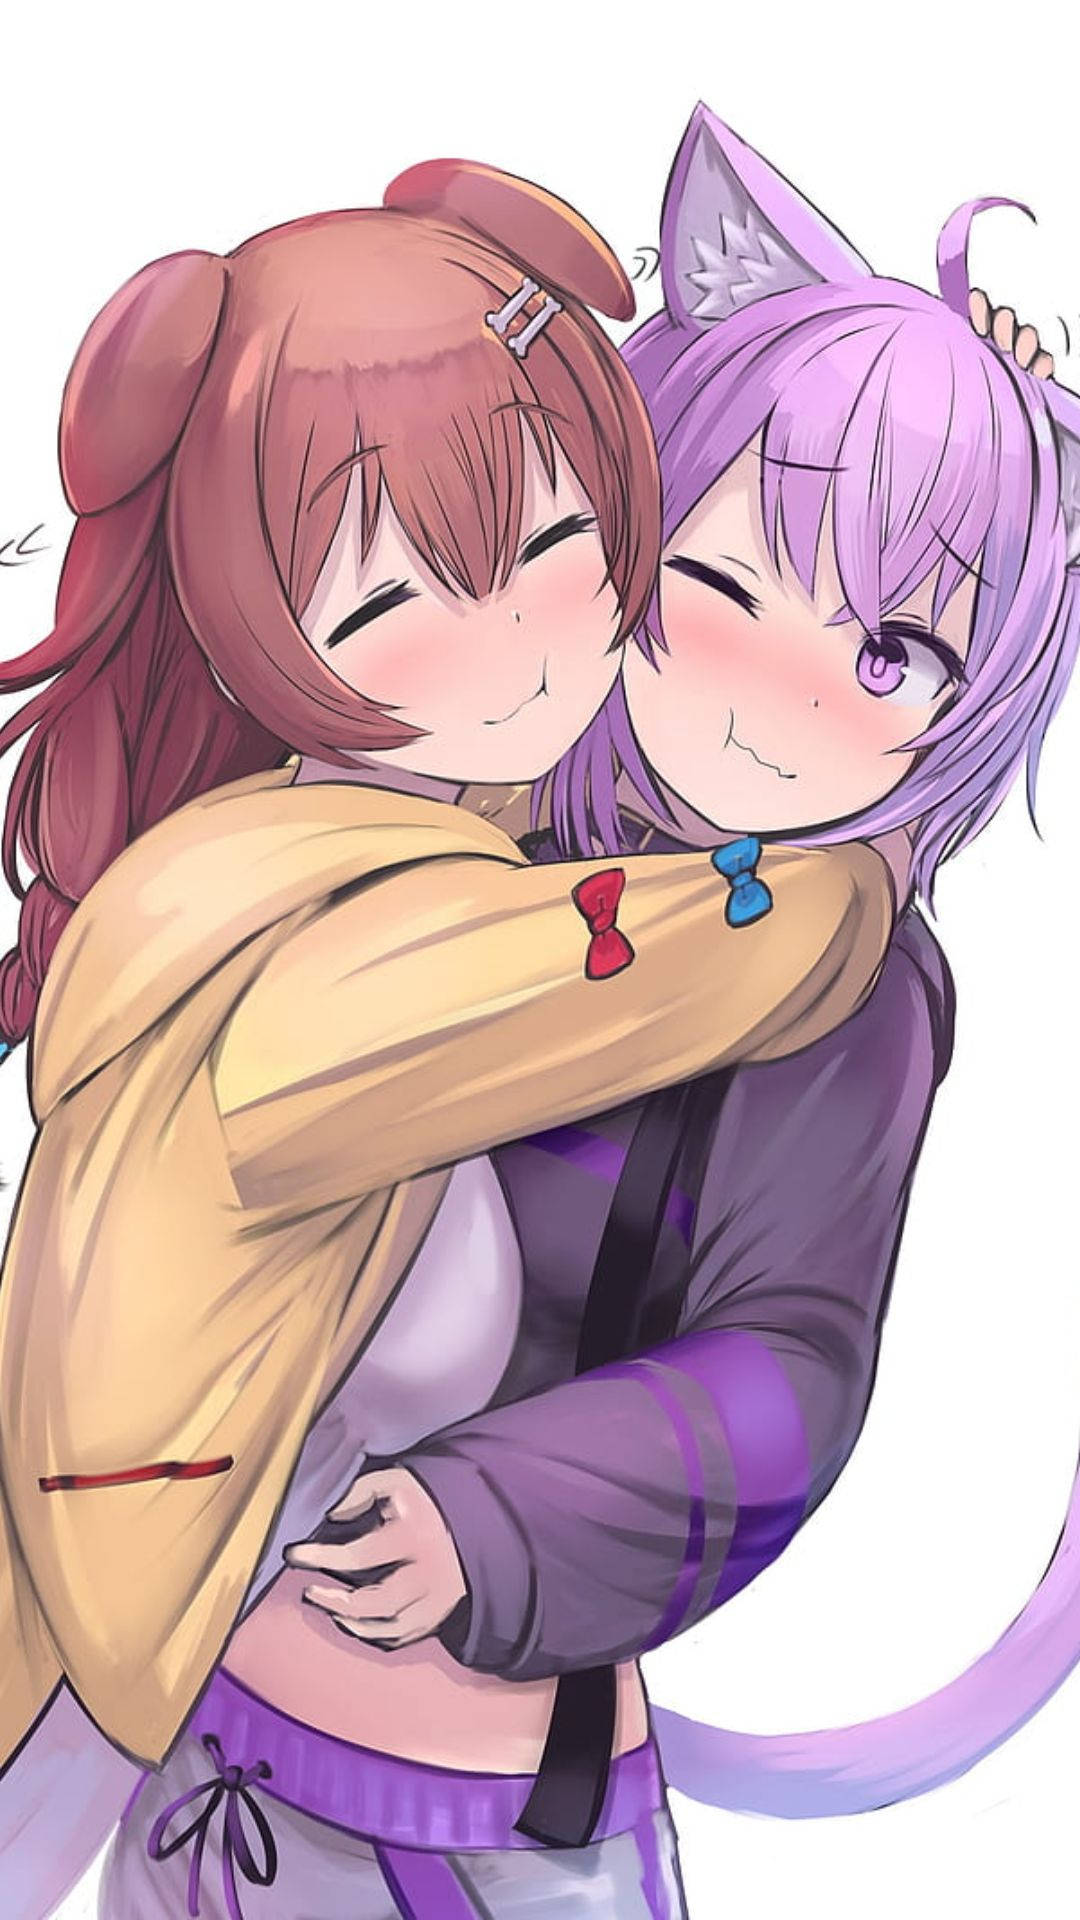 Free Anime Hug Wallpaper Downloads, [100+] Anime Hug Wallpapers for FREE |  